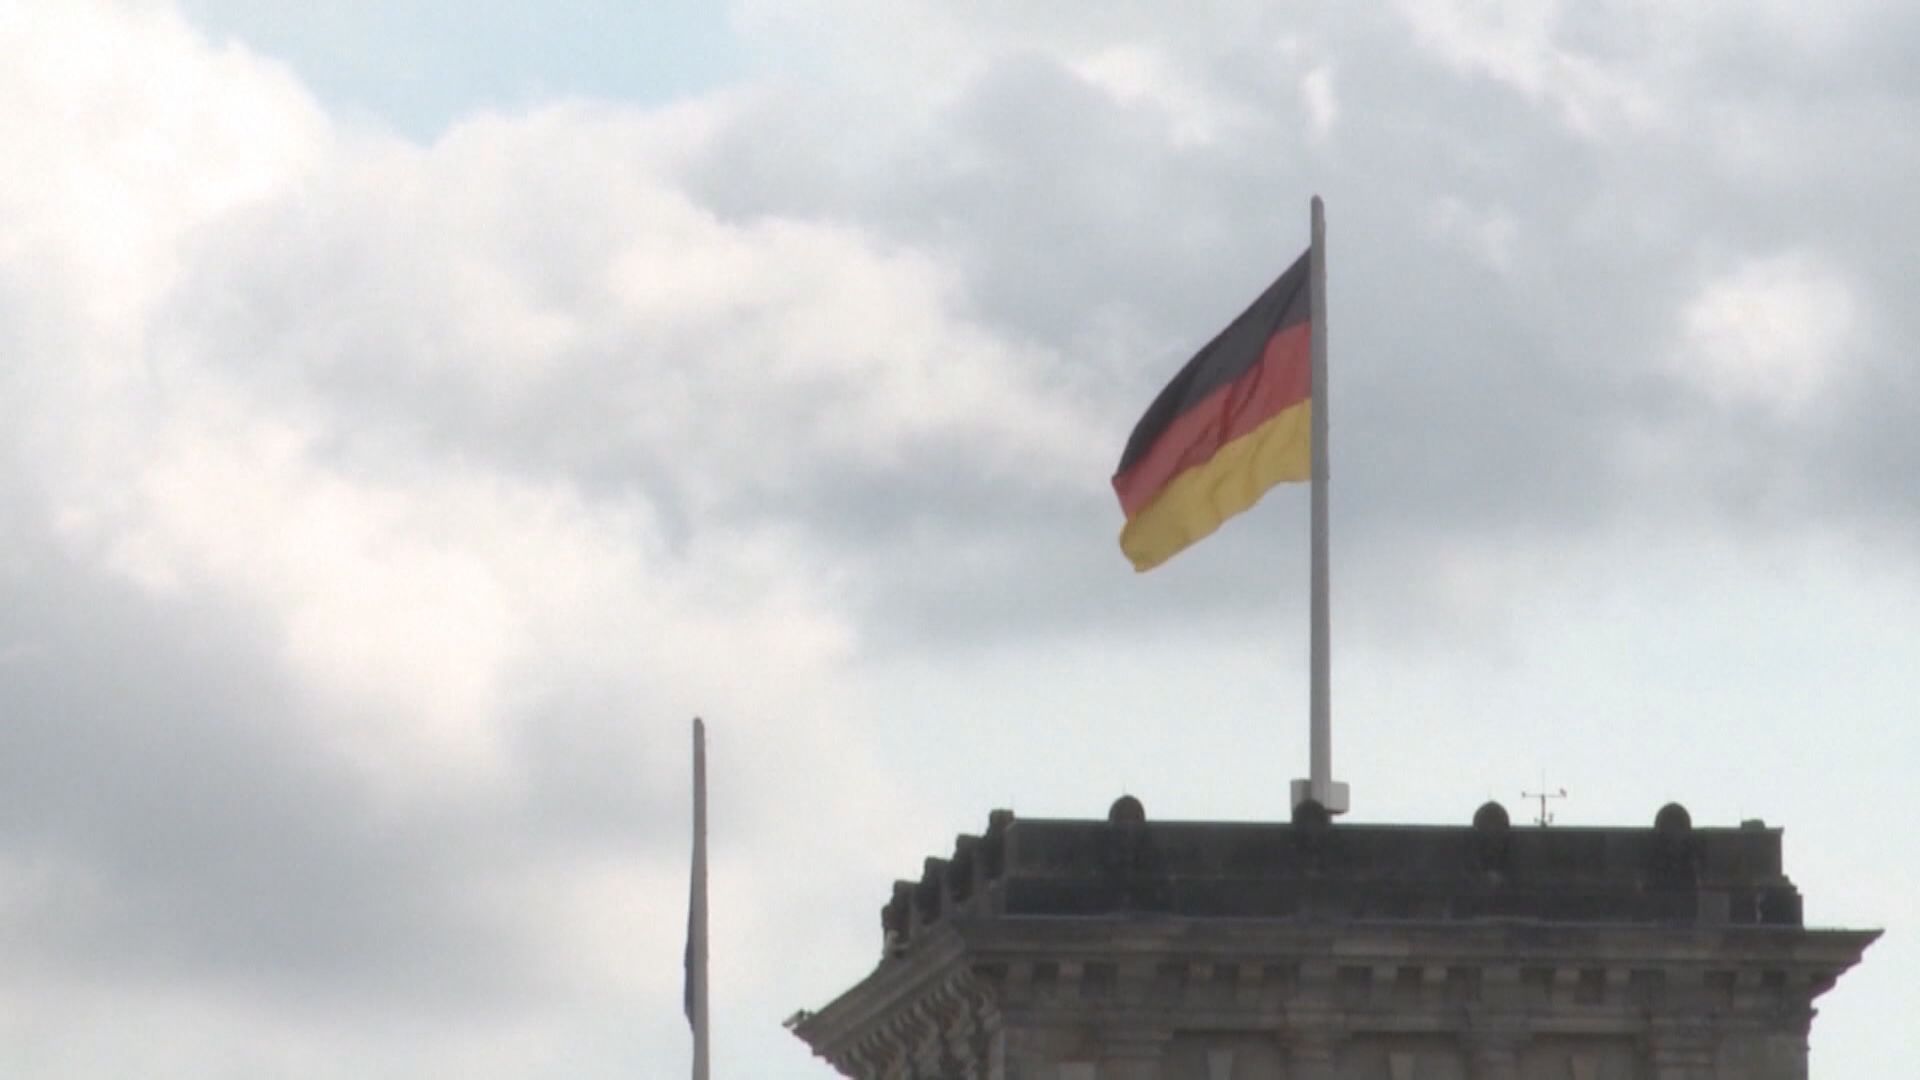 【形勢極具挑戰】德國大削今年經濟增長預測至0.2%